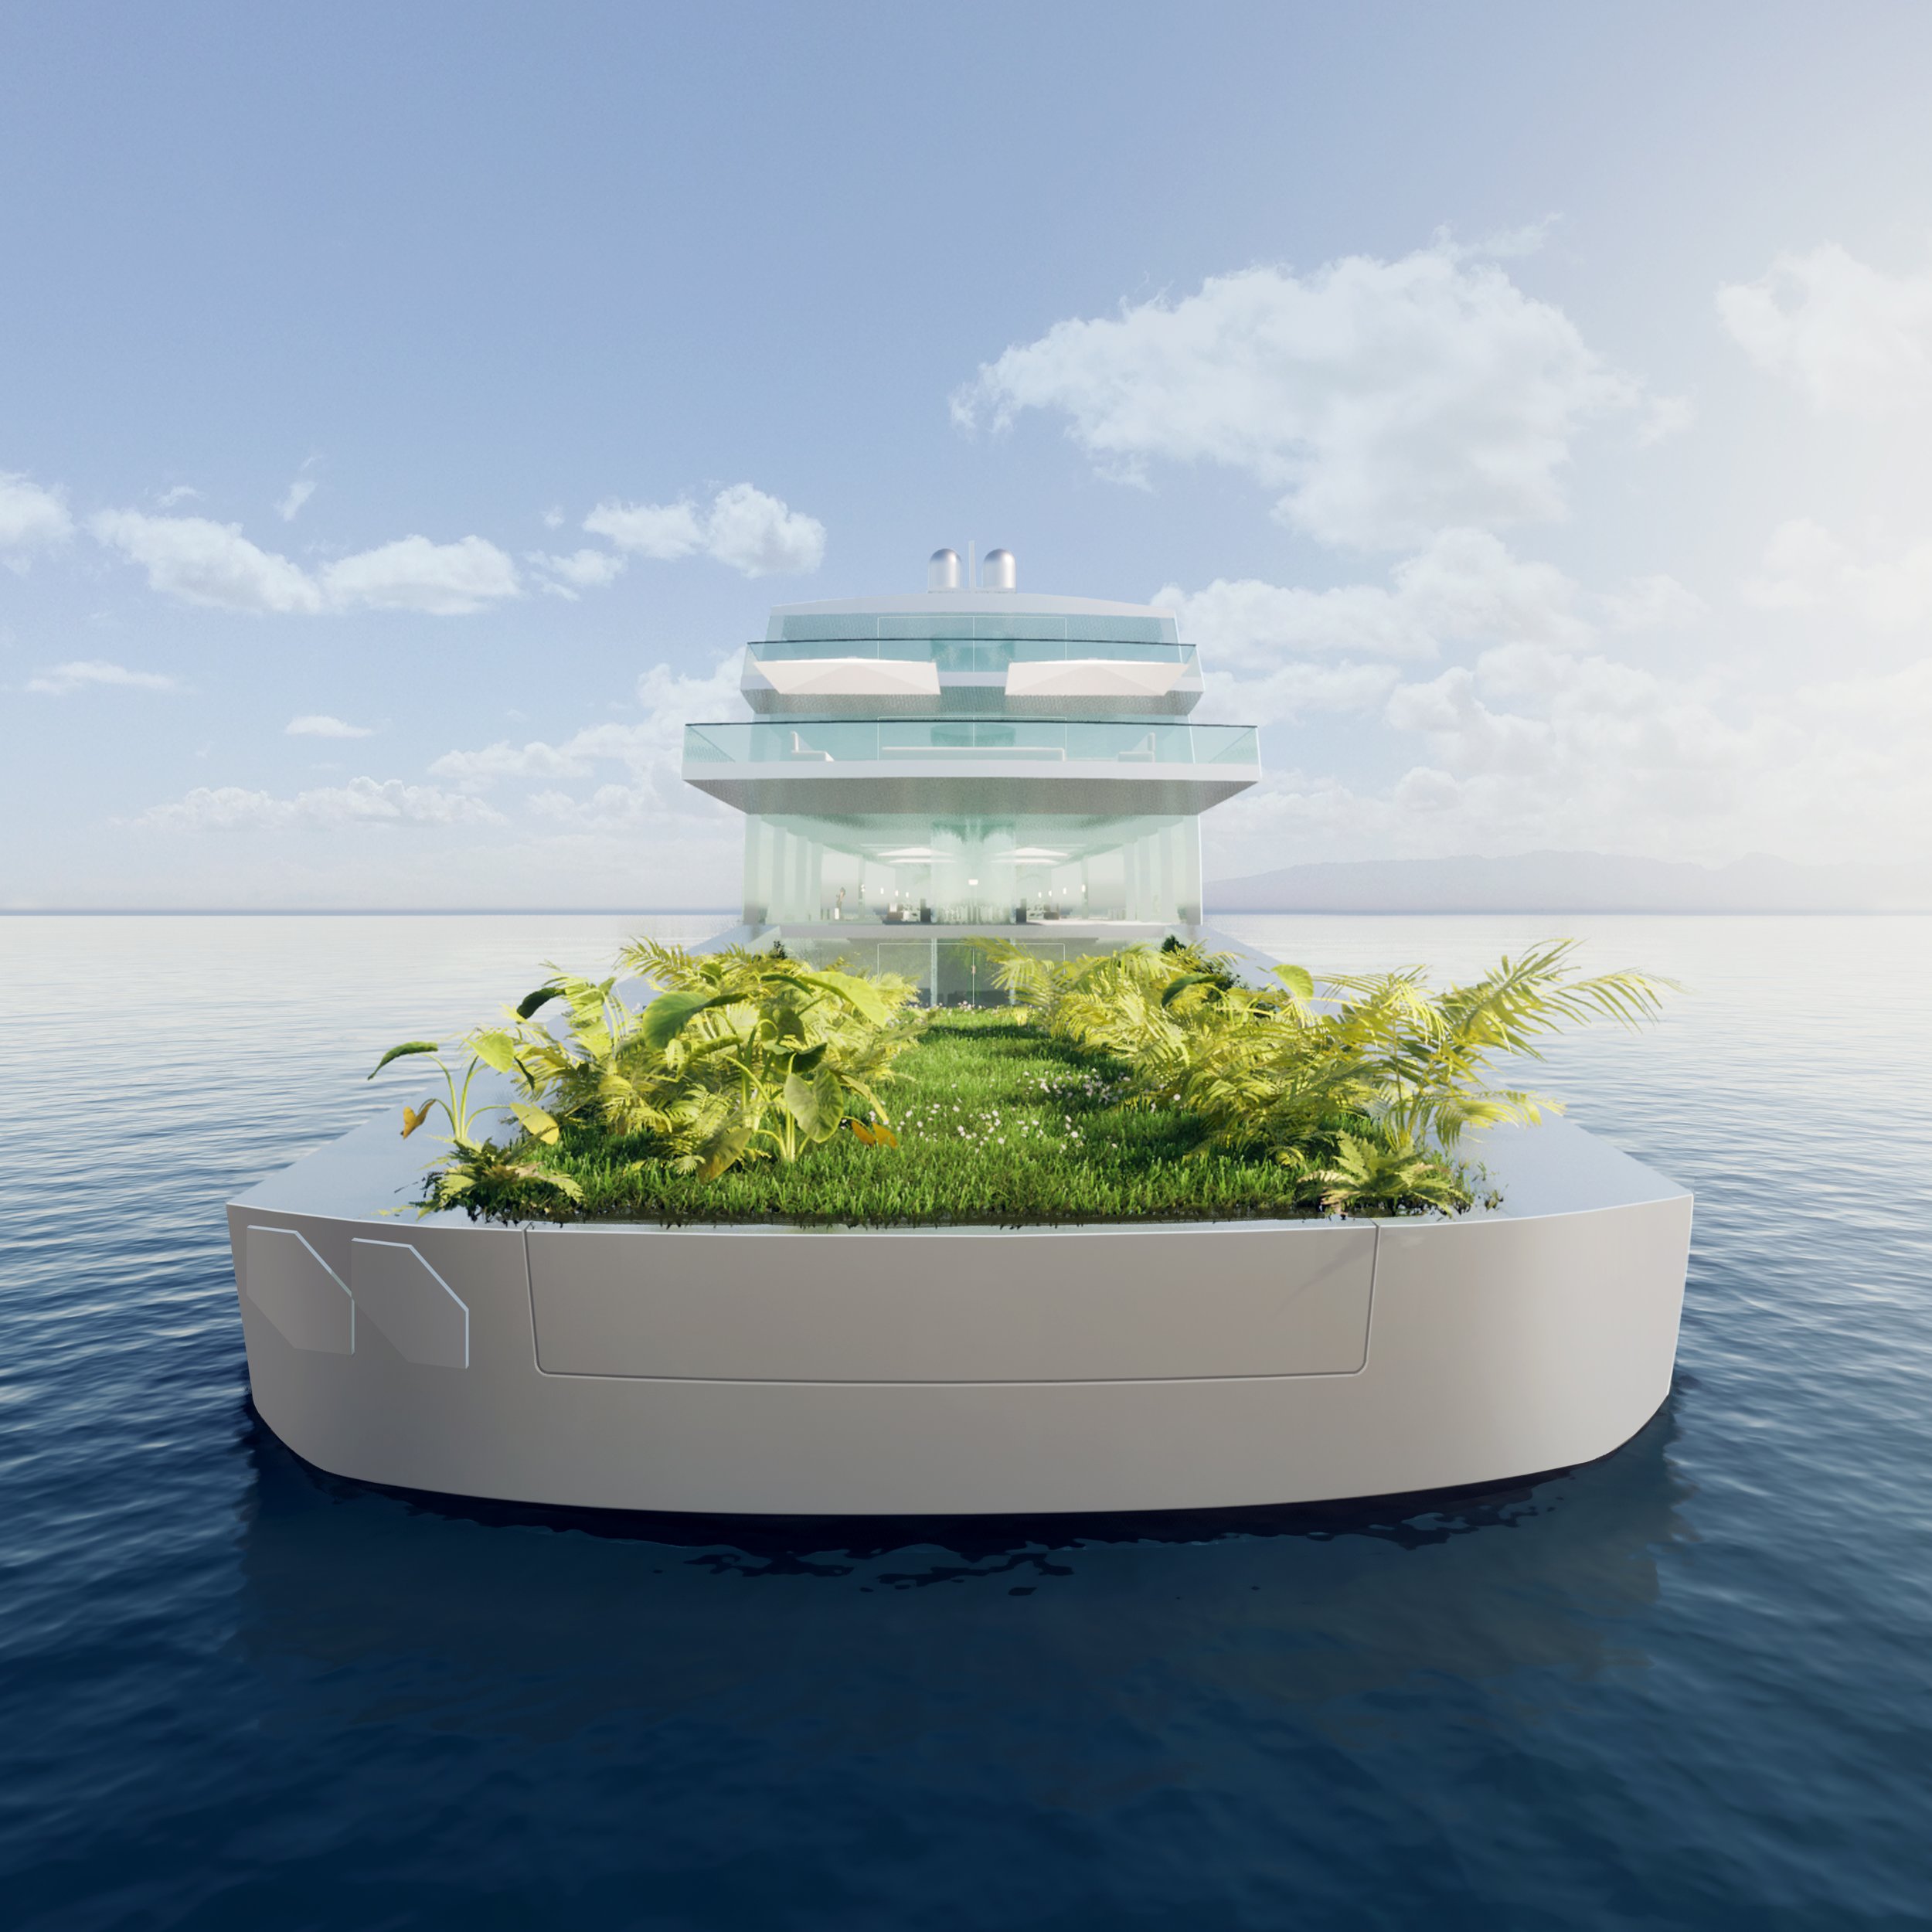 Motor_yacht_U_Concept_design_03c.jpg.jpg